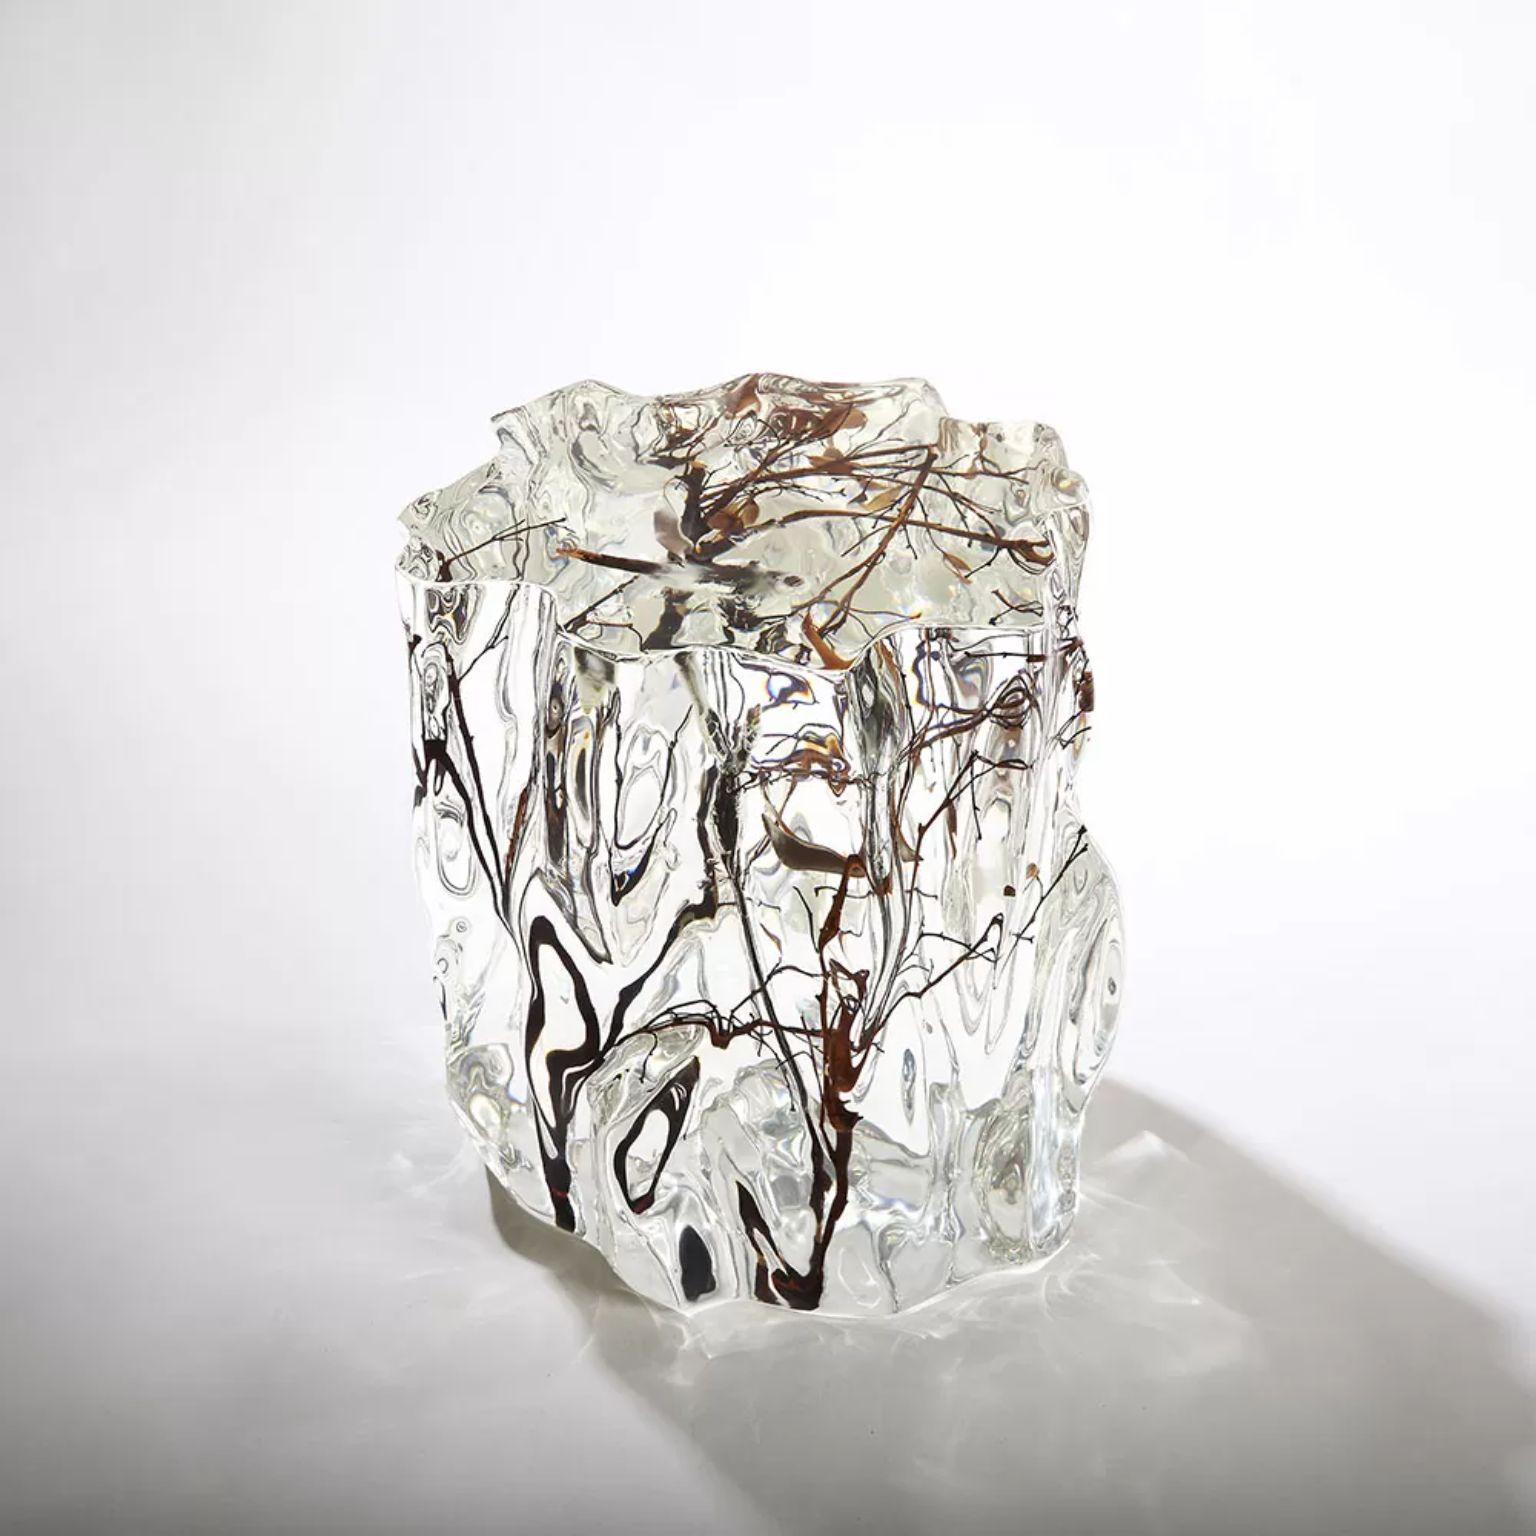 Einzigartig geformtes The Pedestal von Dainte
Abmessungen: T 30 x B 30 x H 35 cm.
MATERIALIEN: Kristall. 

Dieser asymmetrische Kristallsockel ist handwerklich fein gearbeitet und optisch beeindruckend. Der einzigartige Sockel aus Kristall, gemischt